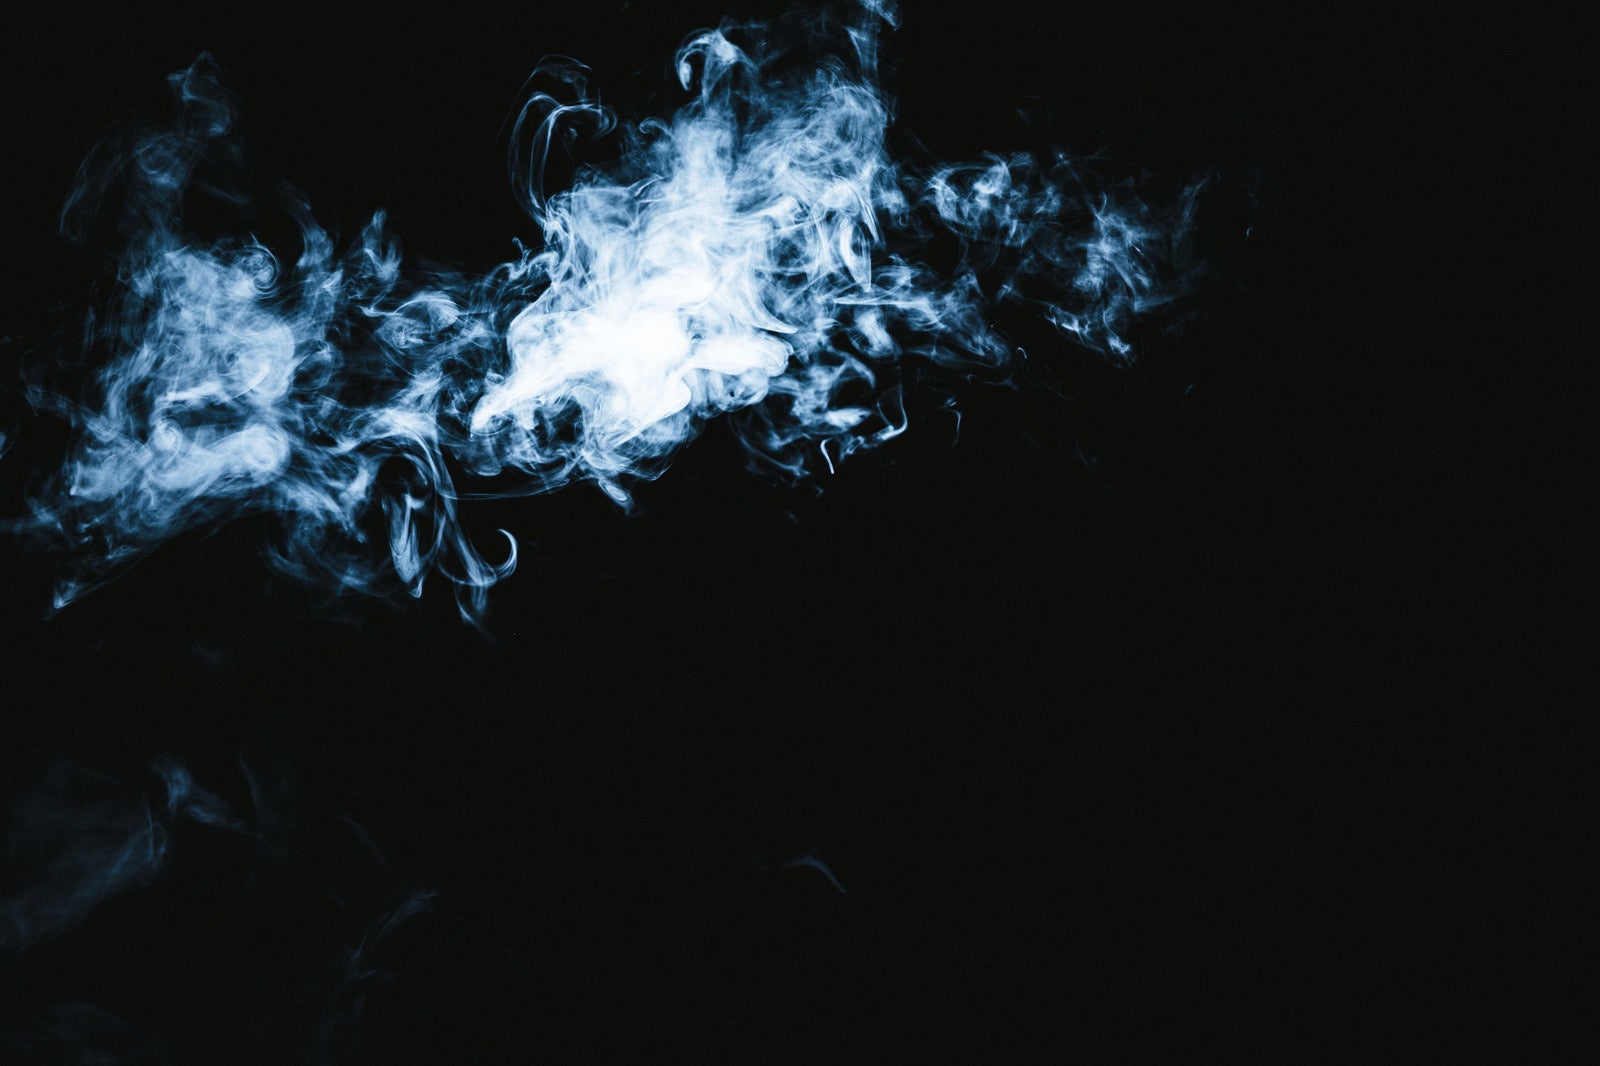 「亡者の悲鳴が聞こえてきそうな煙の形」の写真